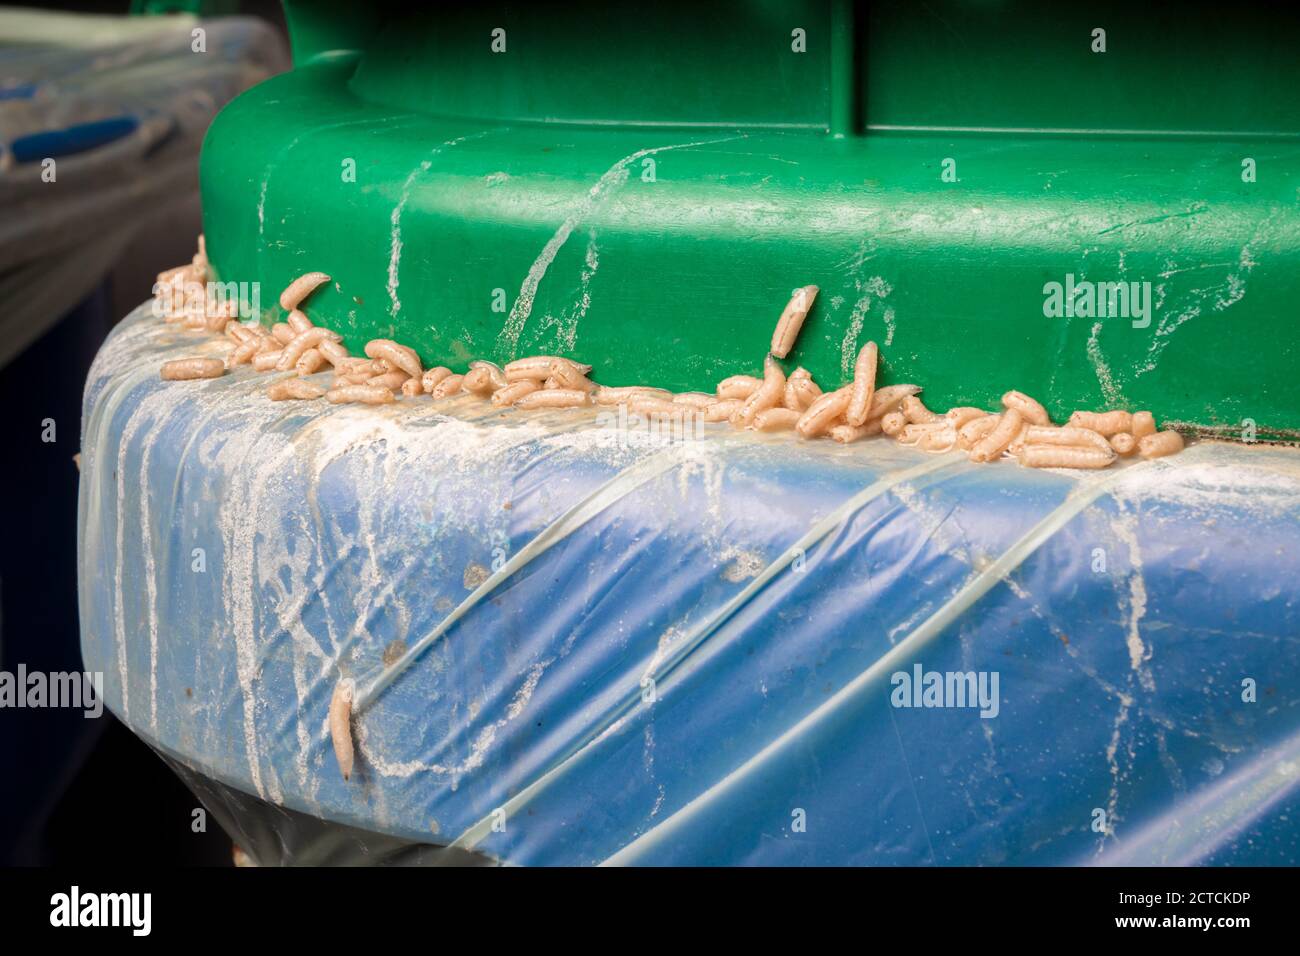 Infestazione di maggots in contenitore di sostanze organiche, bidone verde o composto. Festa maggot su avanzi. Molte larve di mosca attaccate fra il sacchetto, il bidone e il coperchio. Garbag Foto Stock